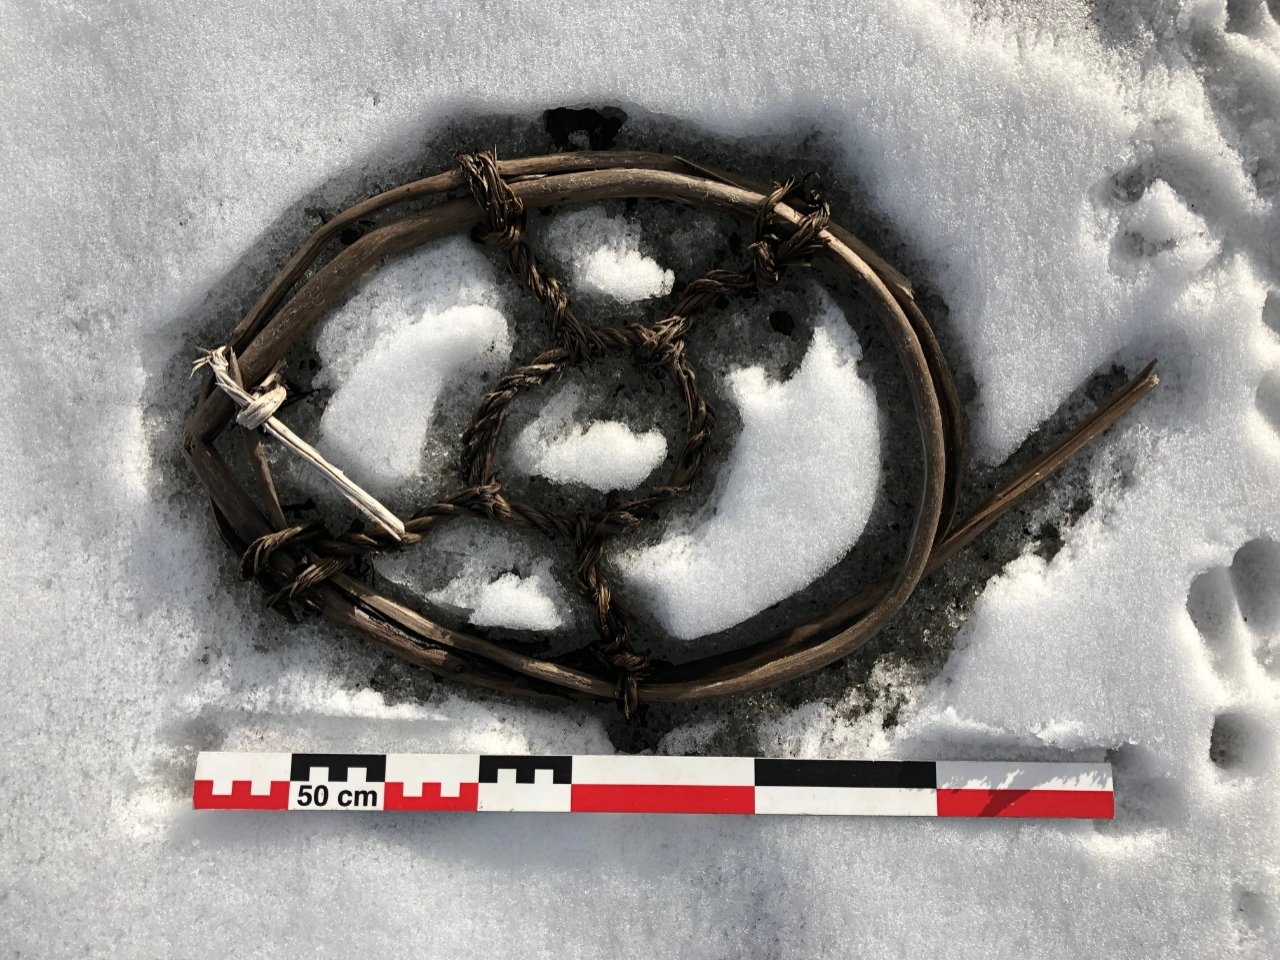 पिघलती बर्फ नॉर्वे 3 में खोए हुए वाइकिंग-युग पास और प्राचीन कलाकृतियों को प्रकट करती है